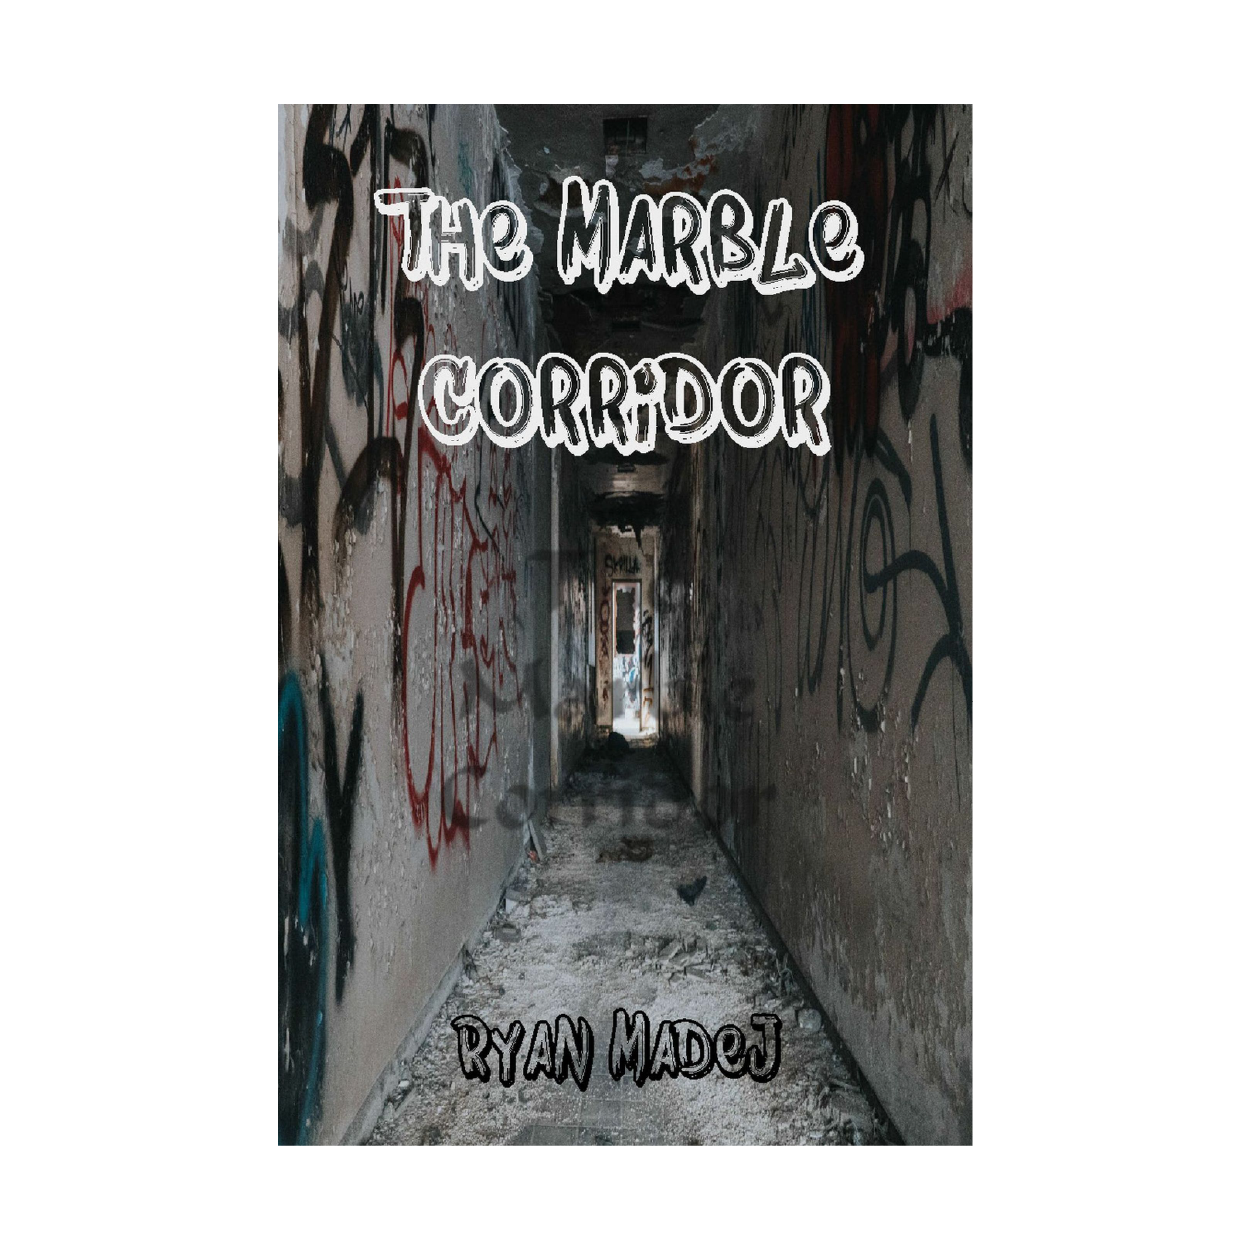 The Marble Corridor (Novel) by Ryan Madej